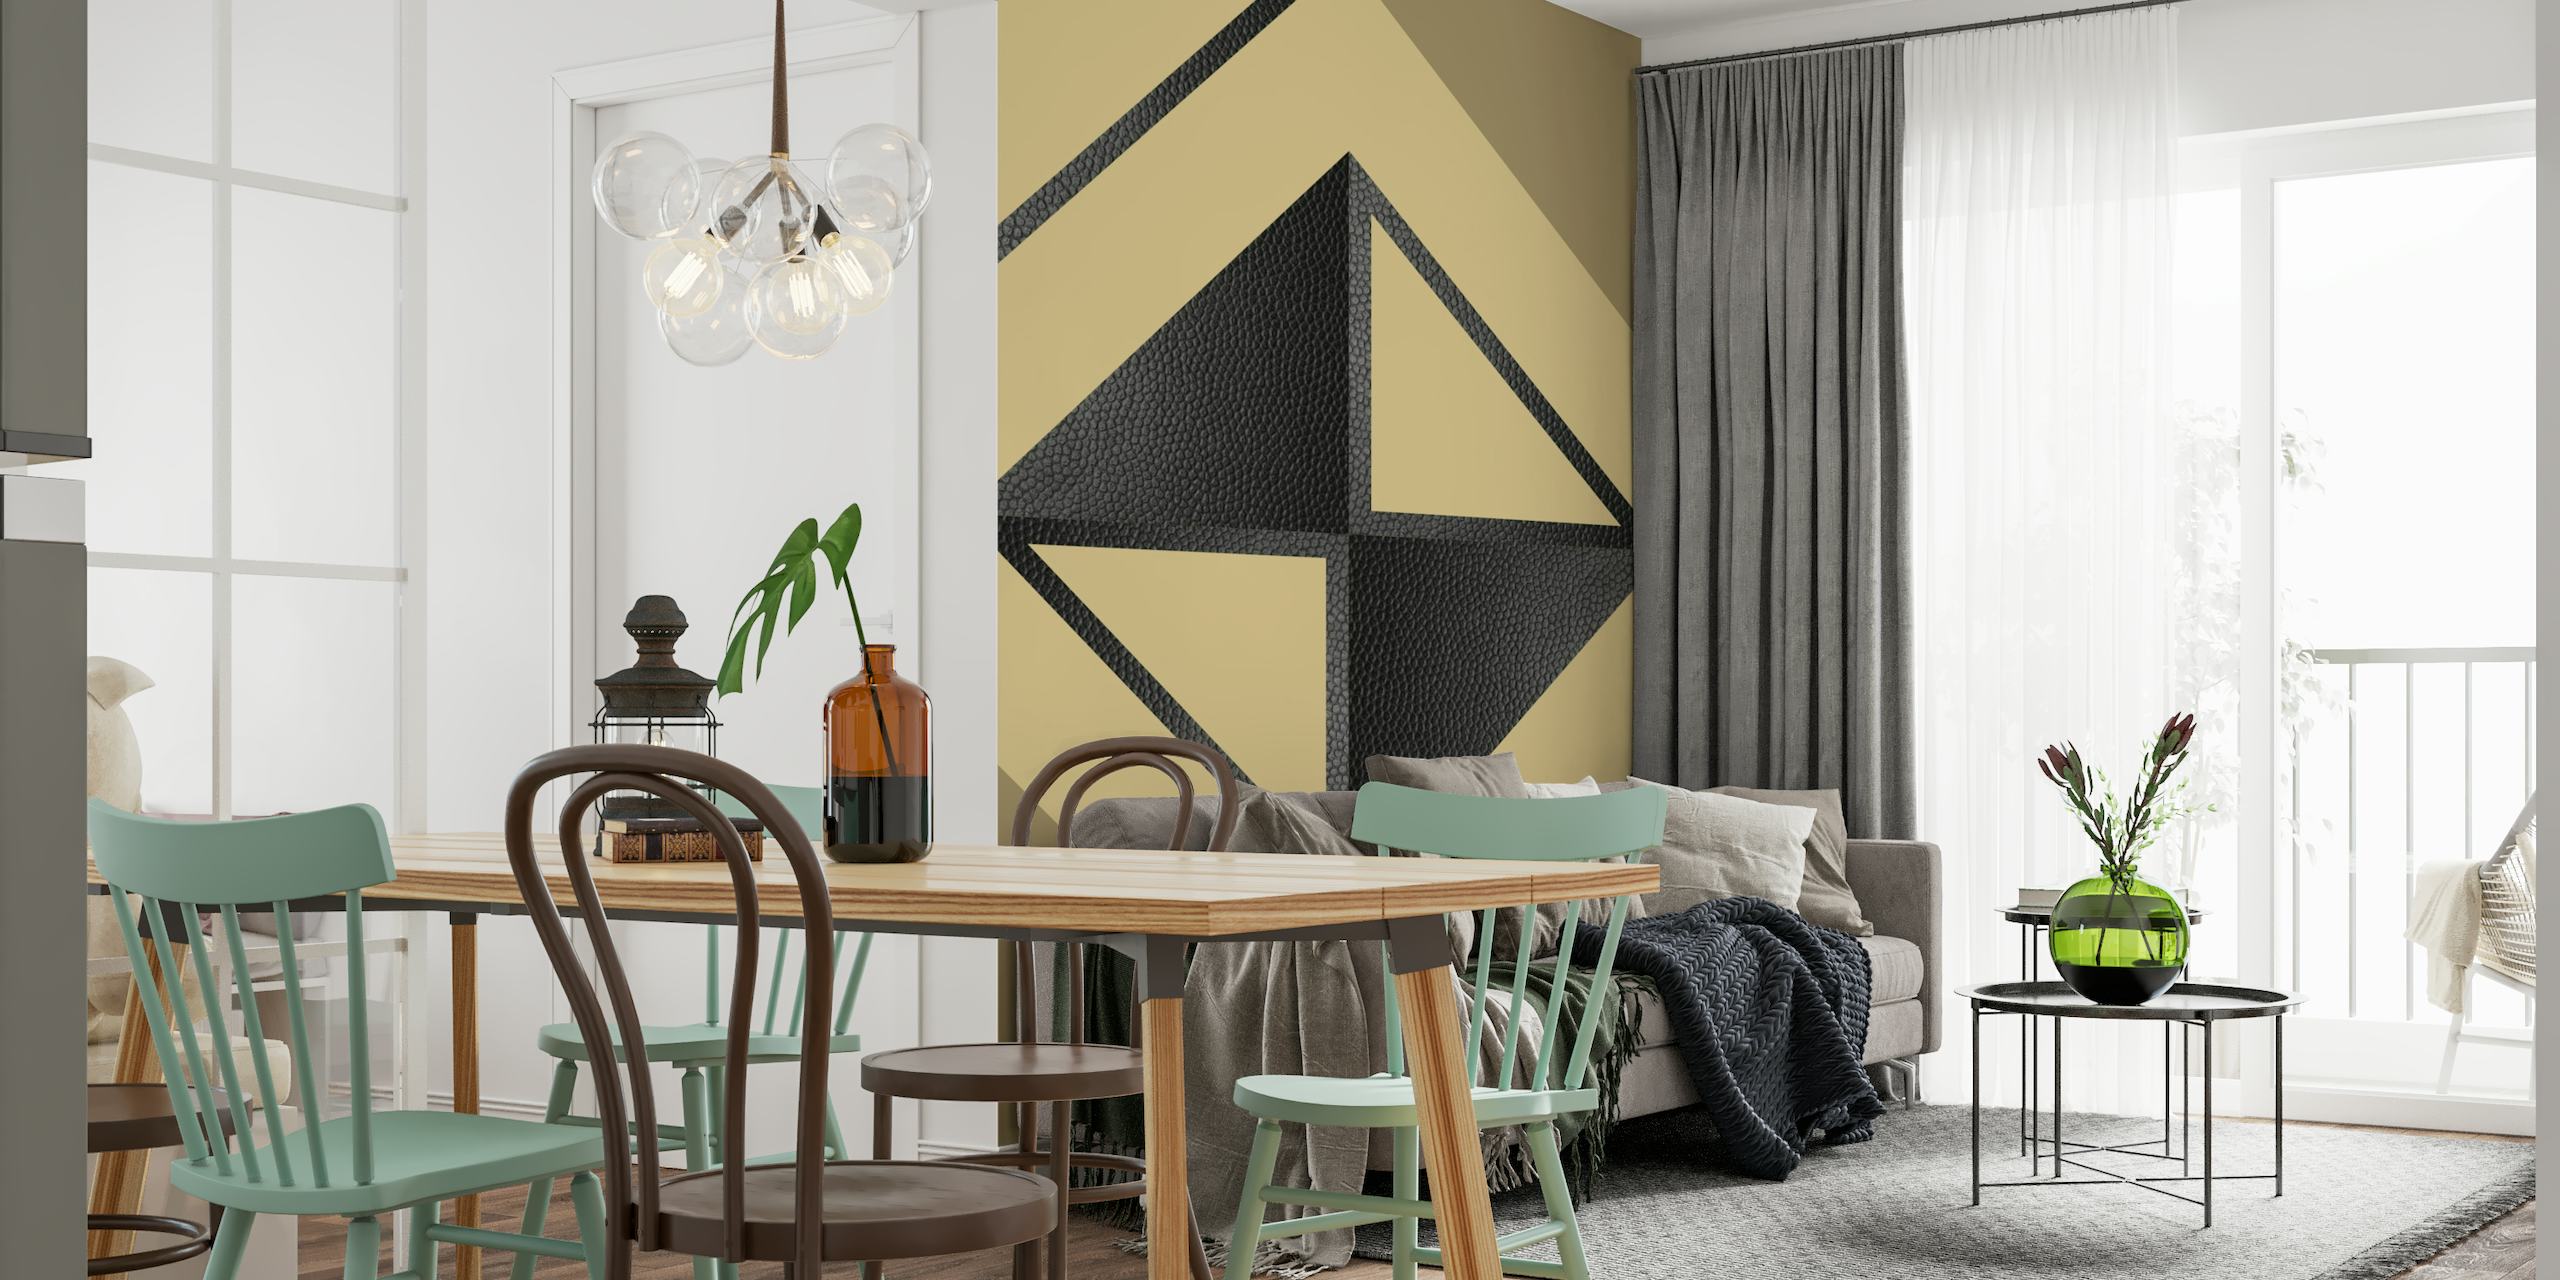 Gul og sort abstrakt geometrisk vægmaleri med minimalistiske trekanter og former